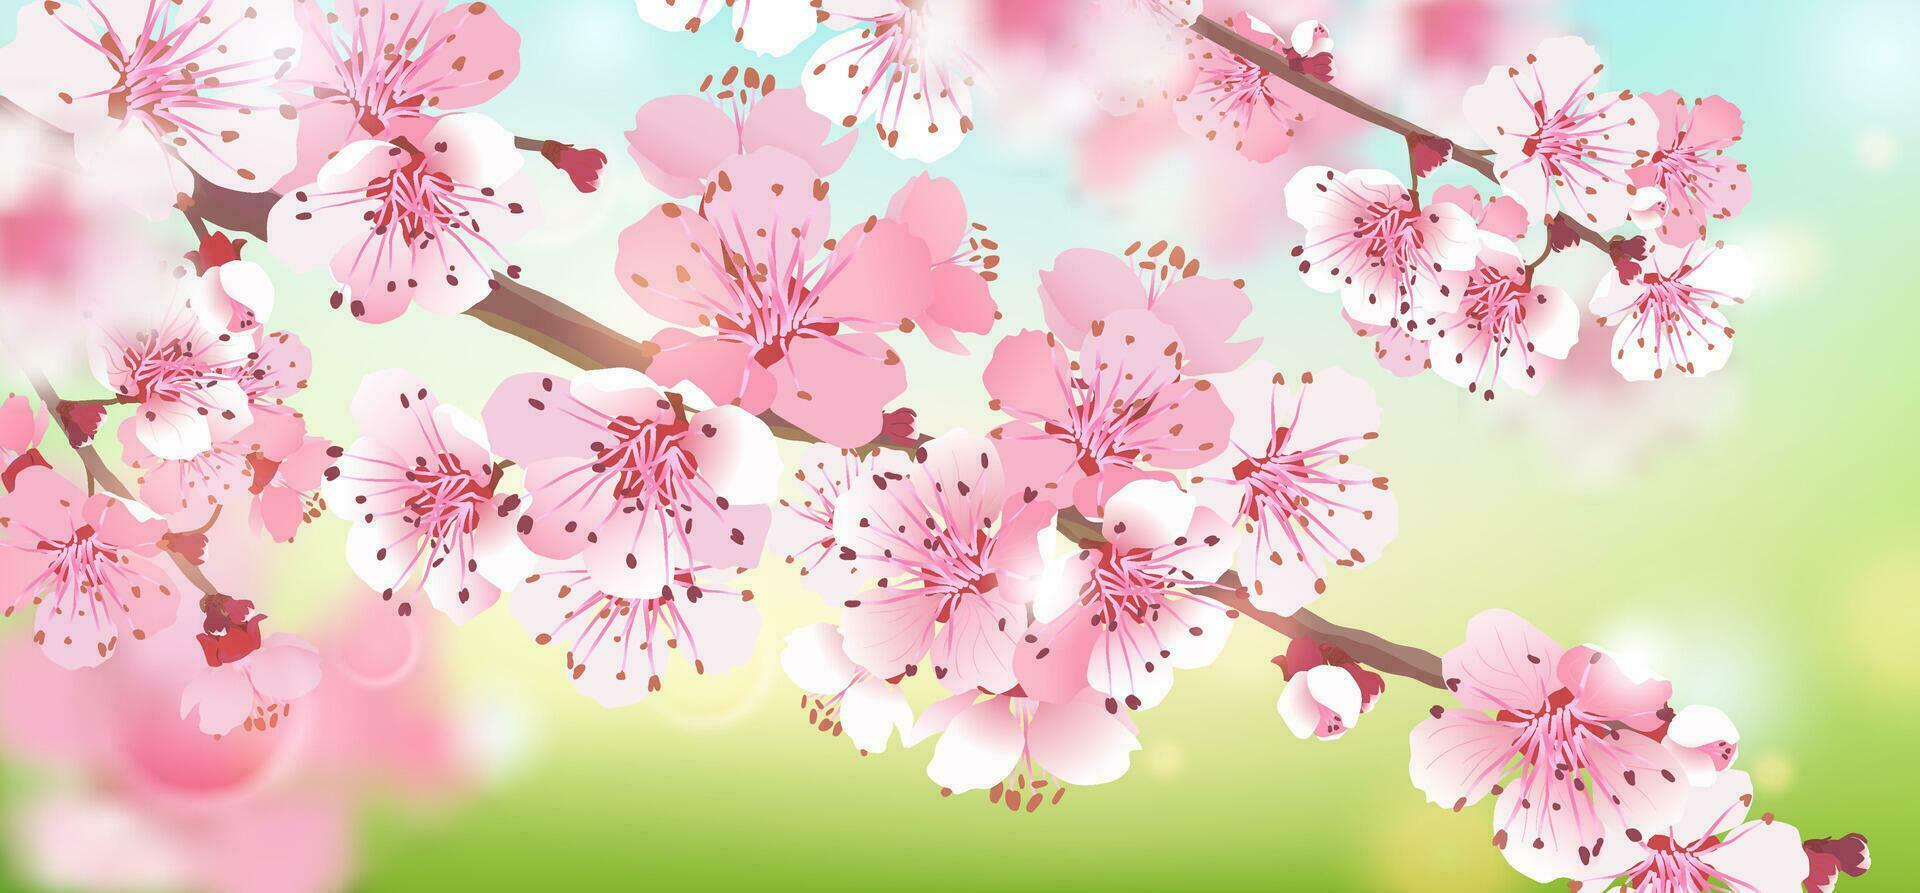 realistisk gren av rosa sakura på en blå grön bakgrund. körsbär blomma är en symbol av kärlek, vår. vektor illustration för bröllop inbjudningar, bakgrund. design för tapet, blomma.